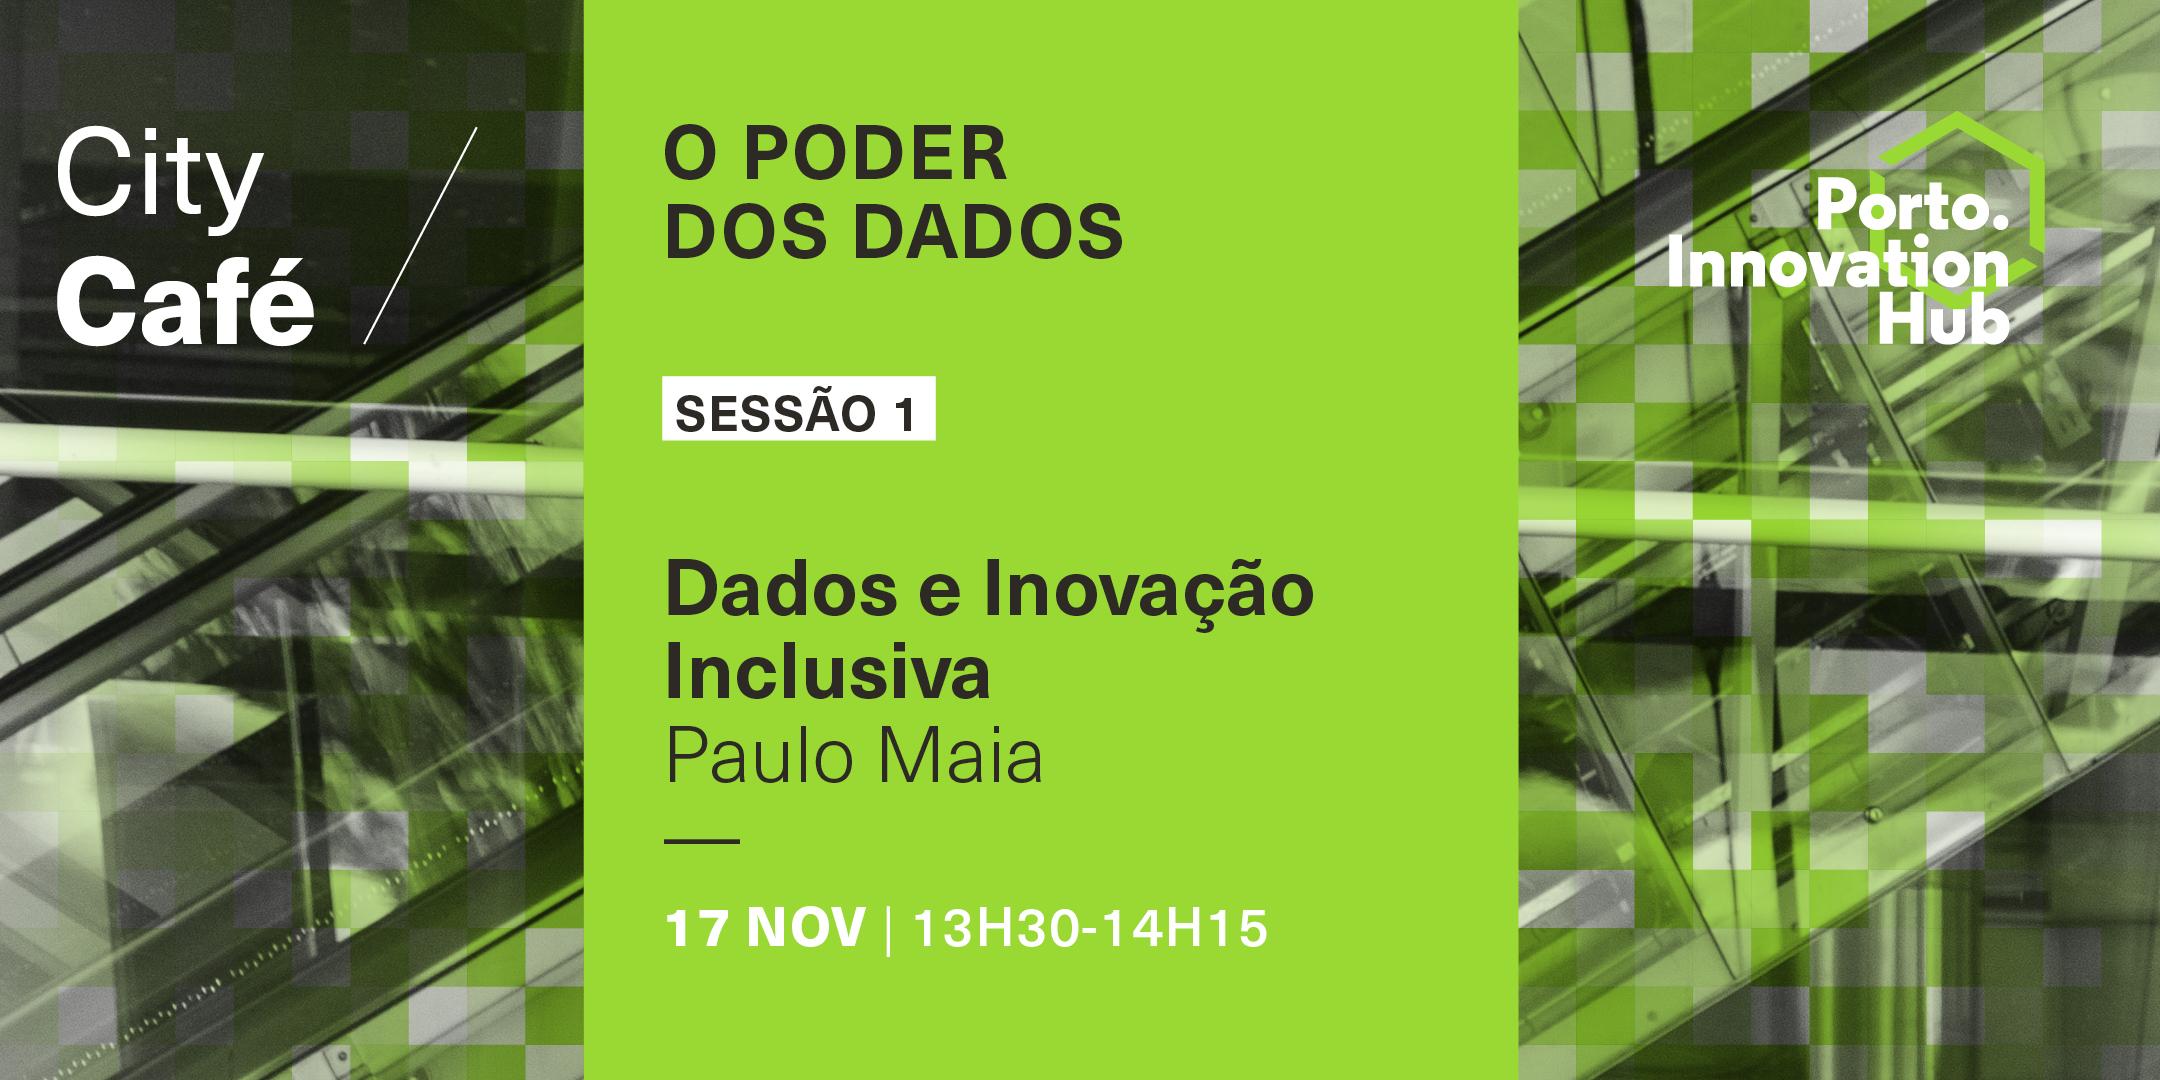 City Café | Dados e Inovação Inclusiva, Paulo Maia